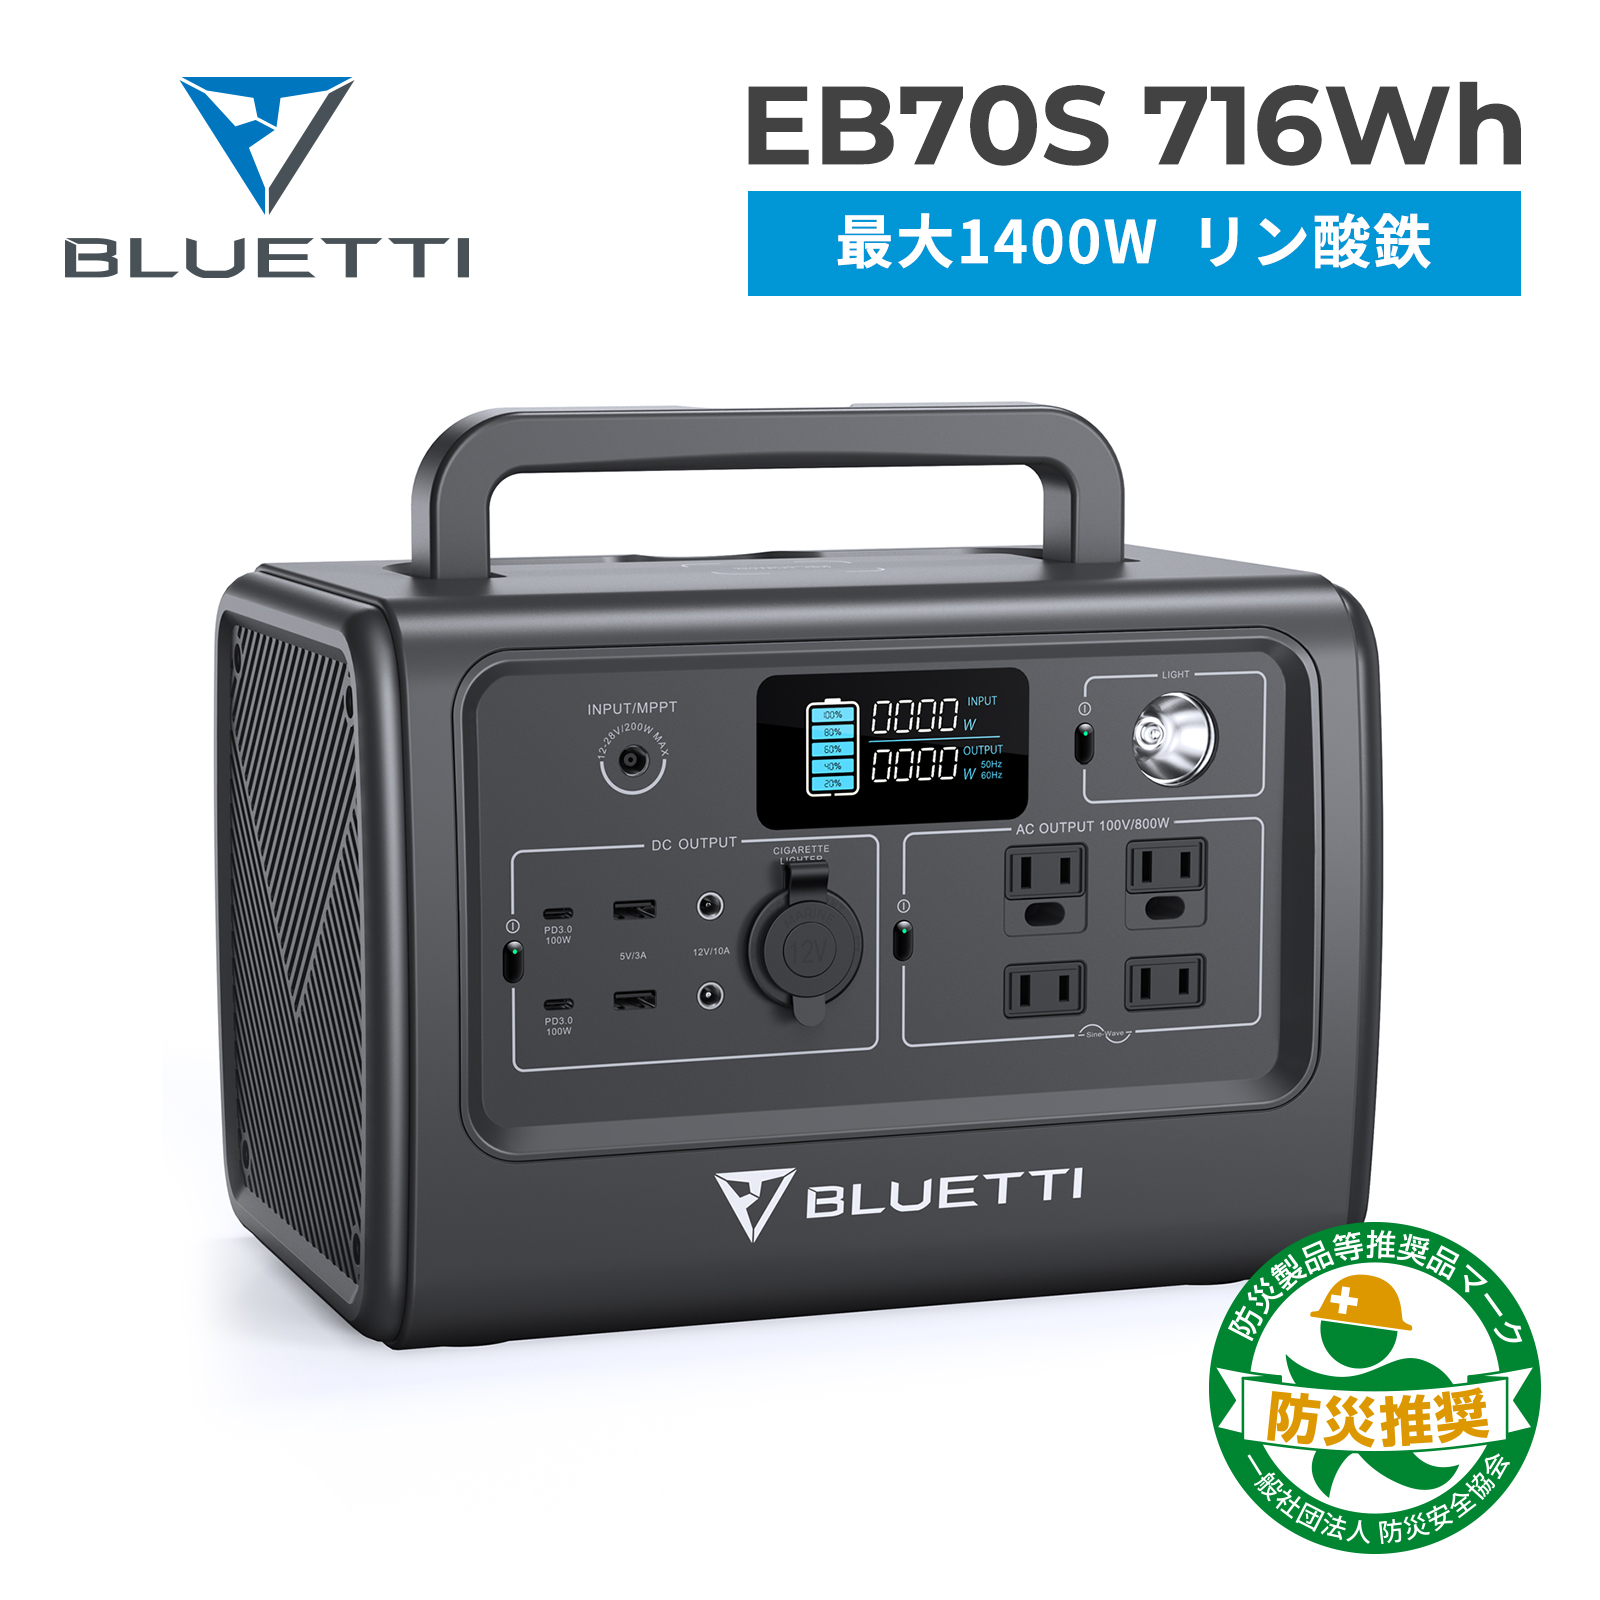 国内発送 BLUETTI JAPAN ショップBLUETTI ポータブル電源 EB70S 716Wh